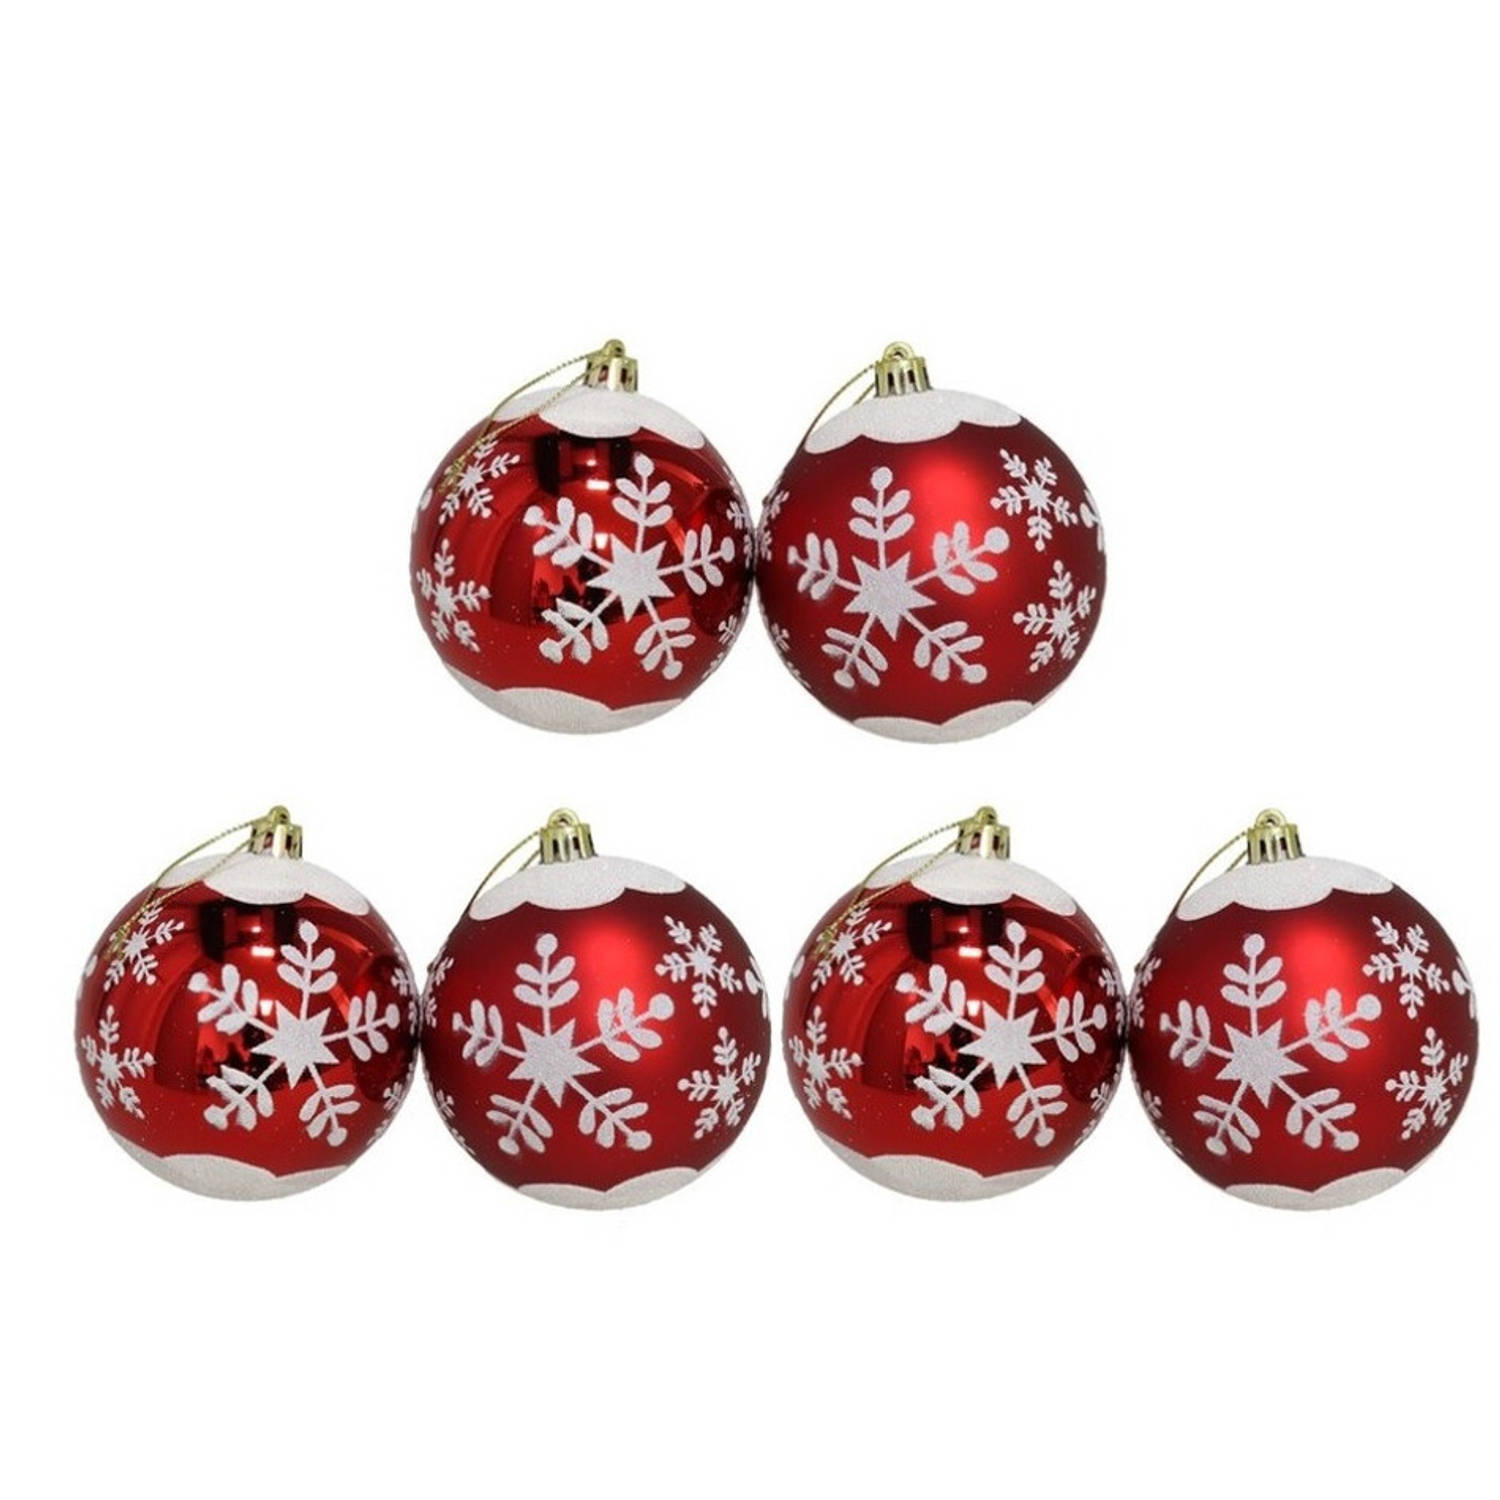 6x stuks gedecoreerde kerstballen rood kunststof diameter 6 cm - Kerstboom versiering